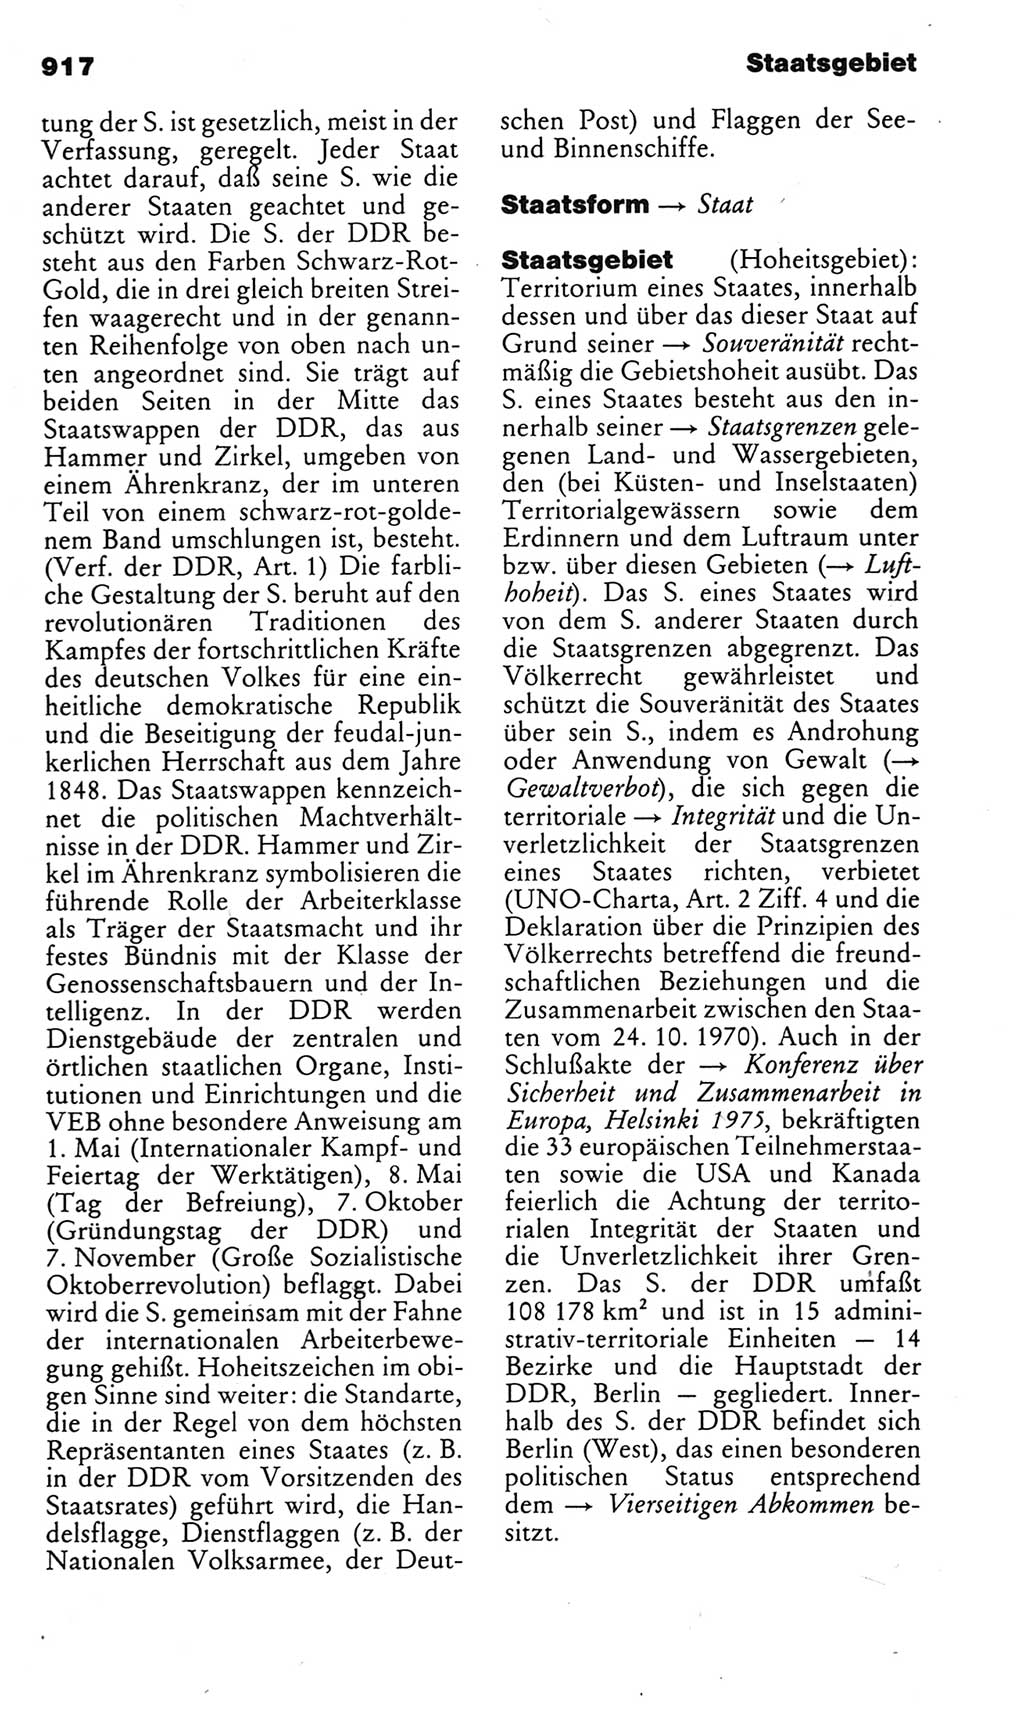 Kleines politisches Wörterbuch [Deutsche Demokratische Republik (DDR)] 1983, Seite 917 (Kl. pol. Wb. DDR 1983, S. 917)